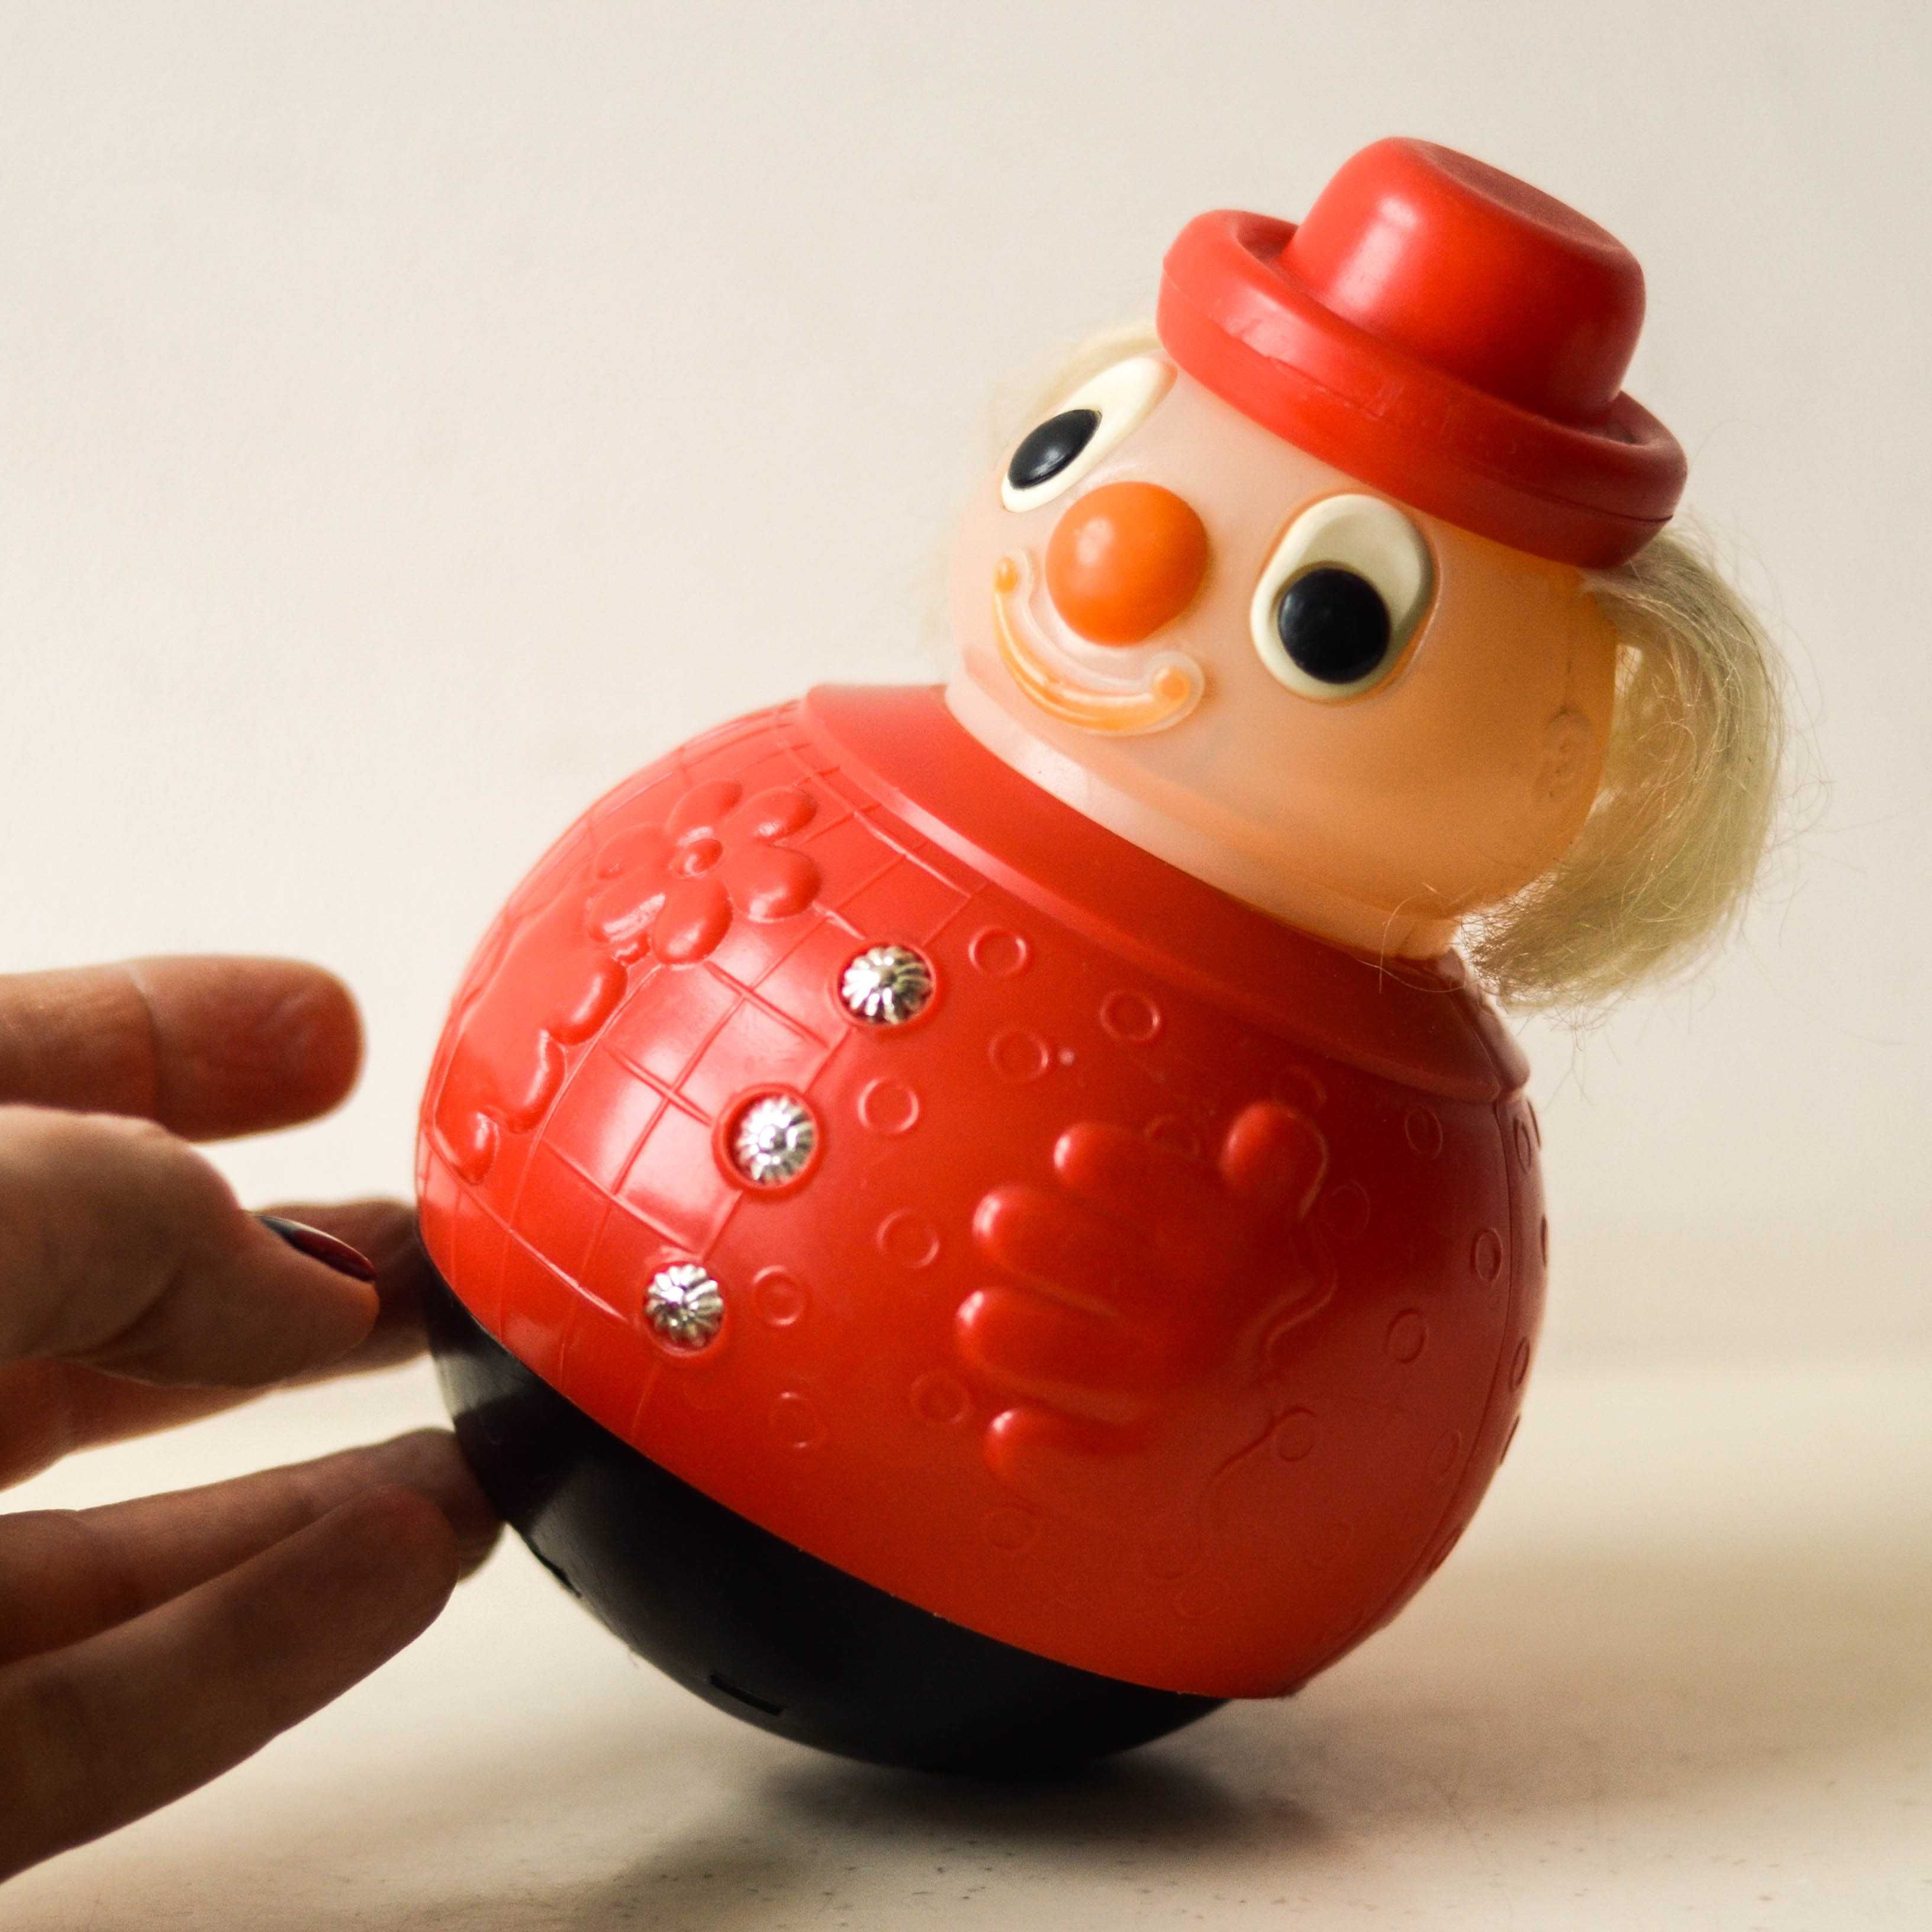 Коллекционная неваляшка Клоун из СССР, Советская винтажная игрушка